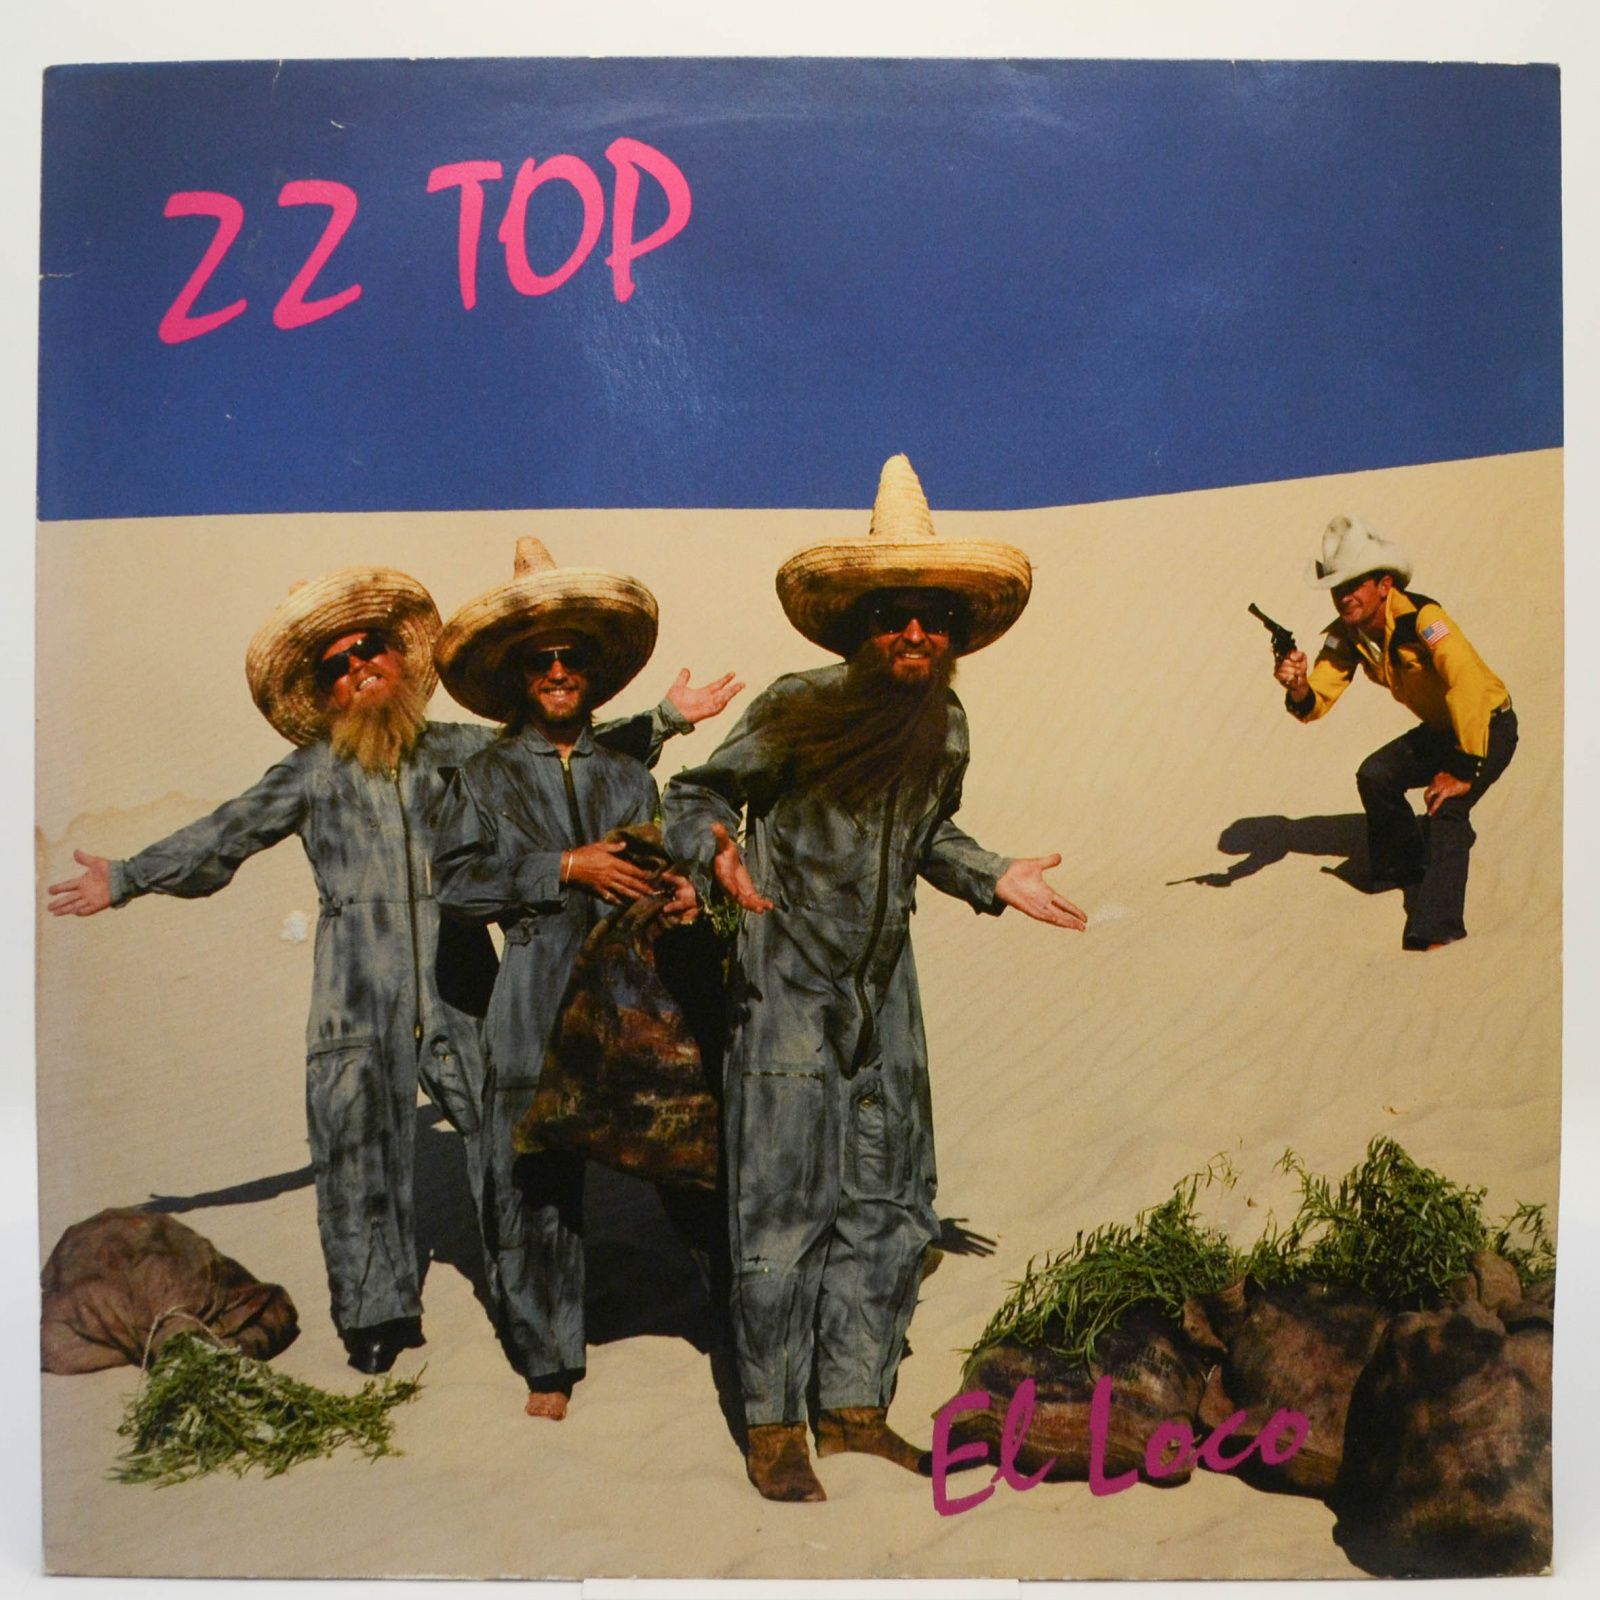 ZZ Top — El Loco, 1981